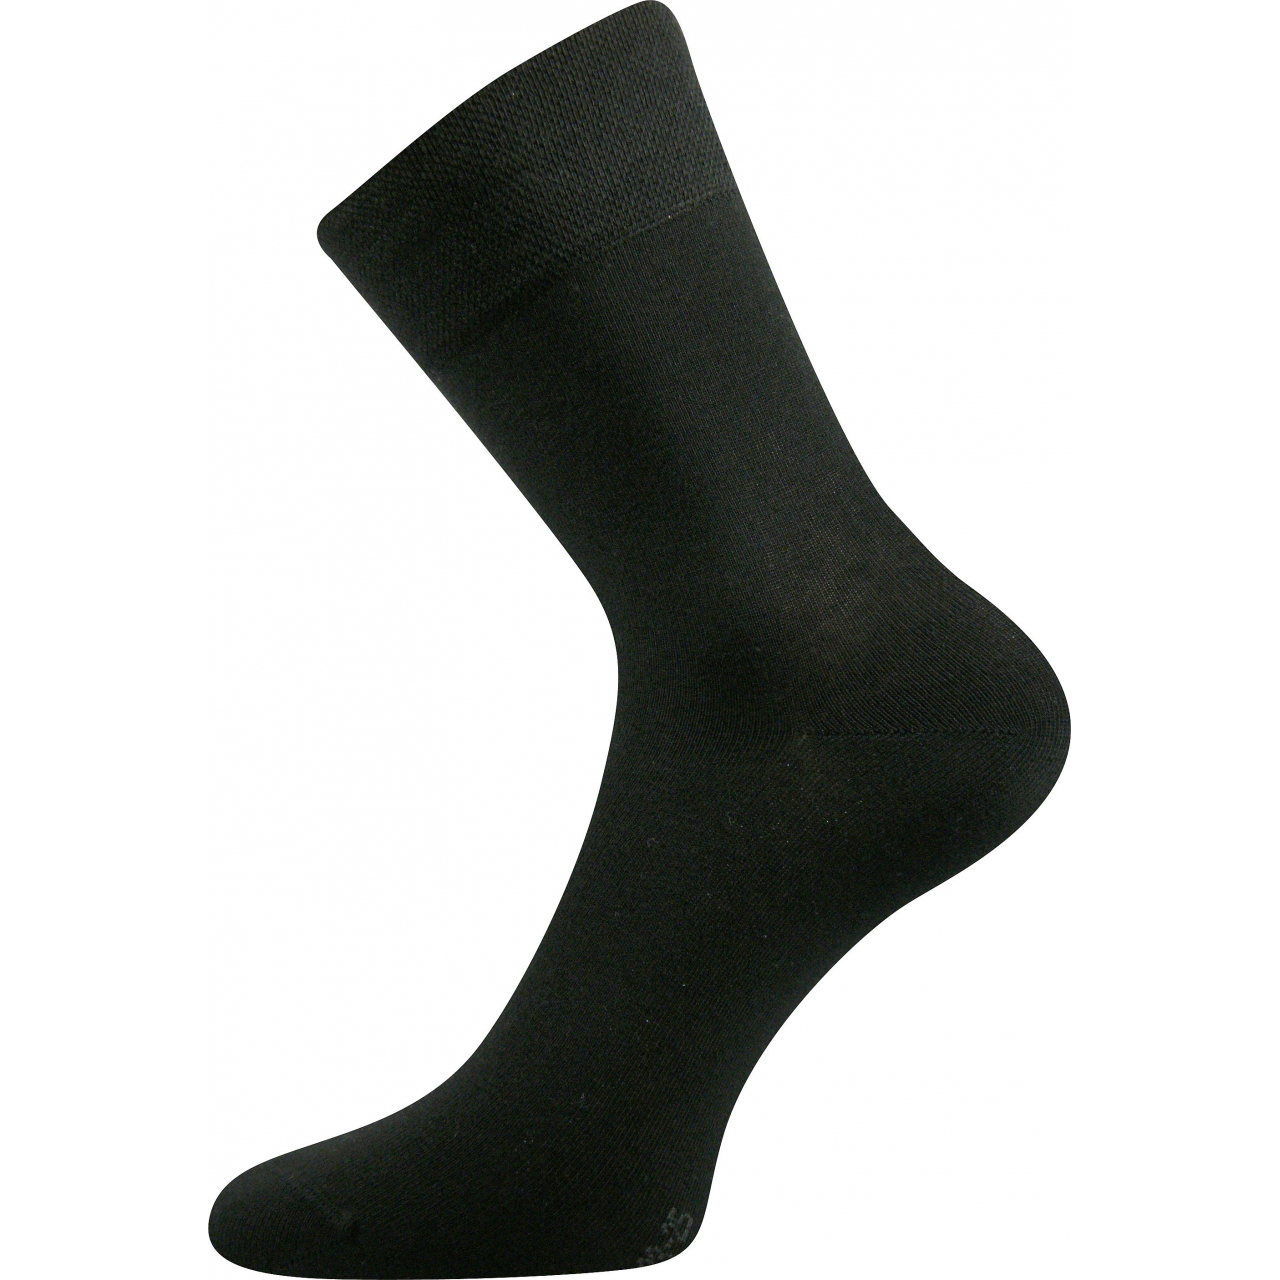 Ponožky společenské Lonka Dypak - černé, 43-46